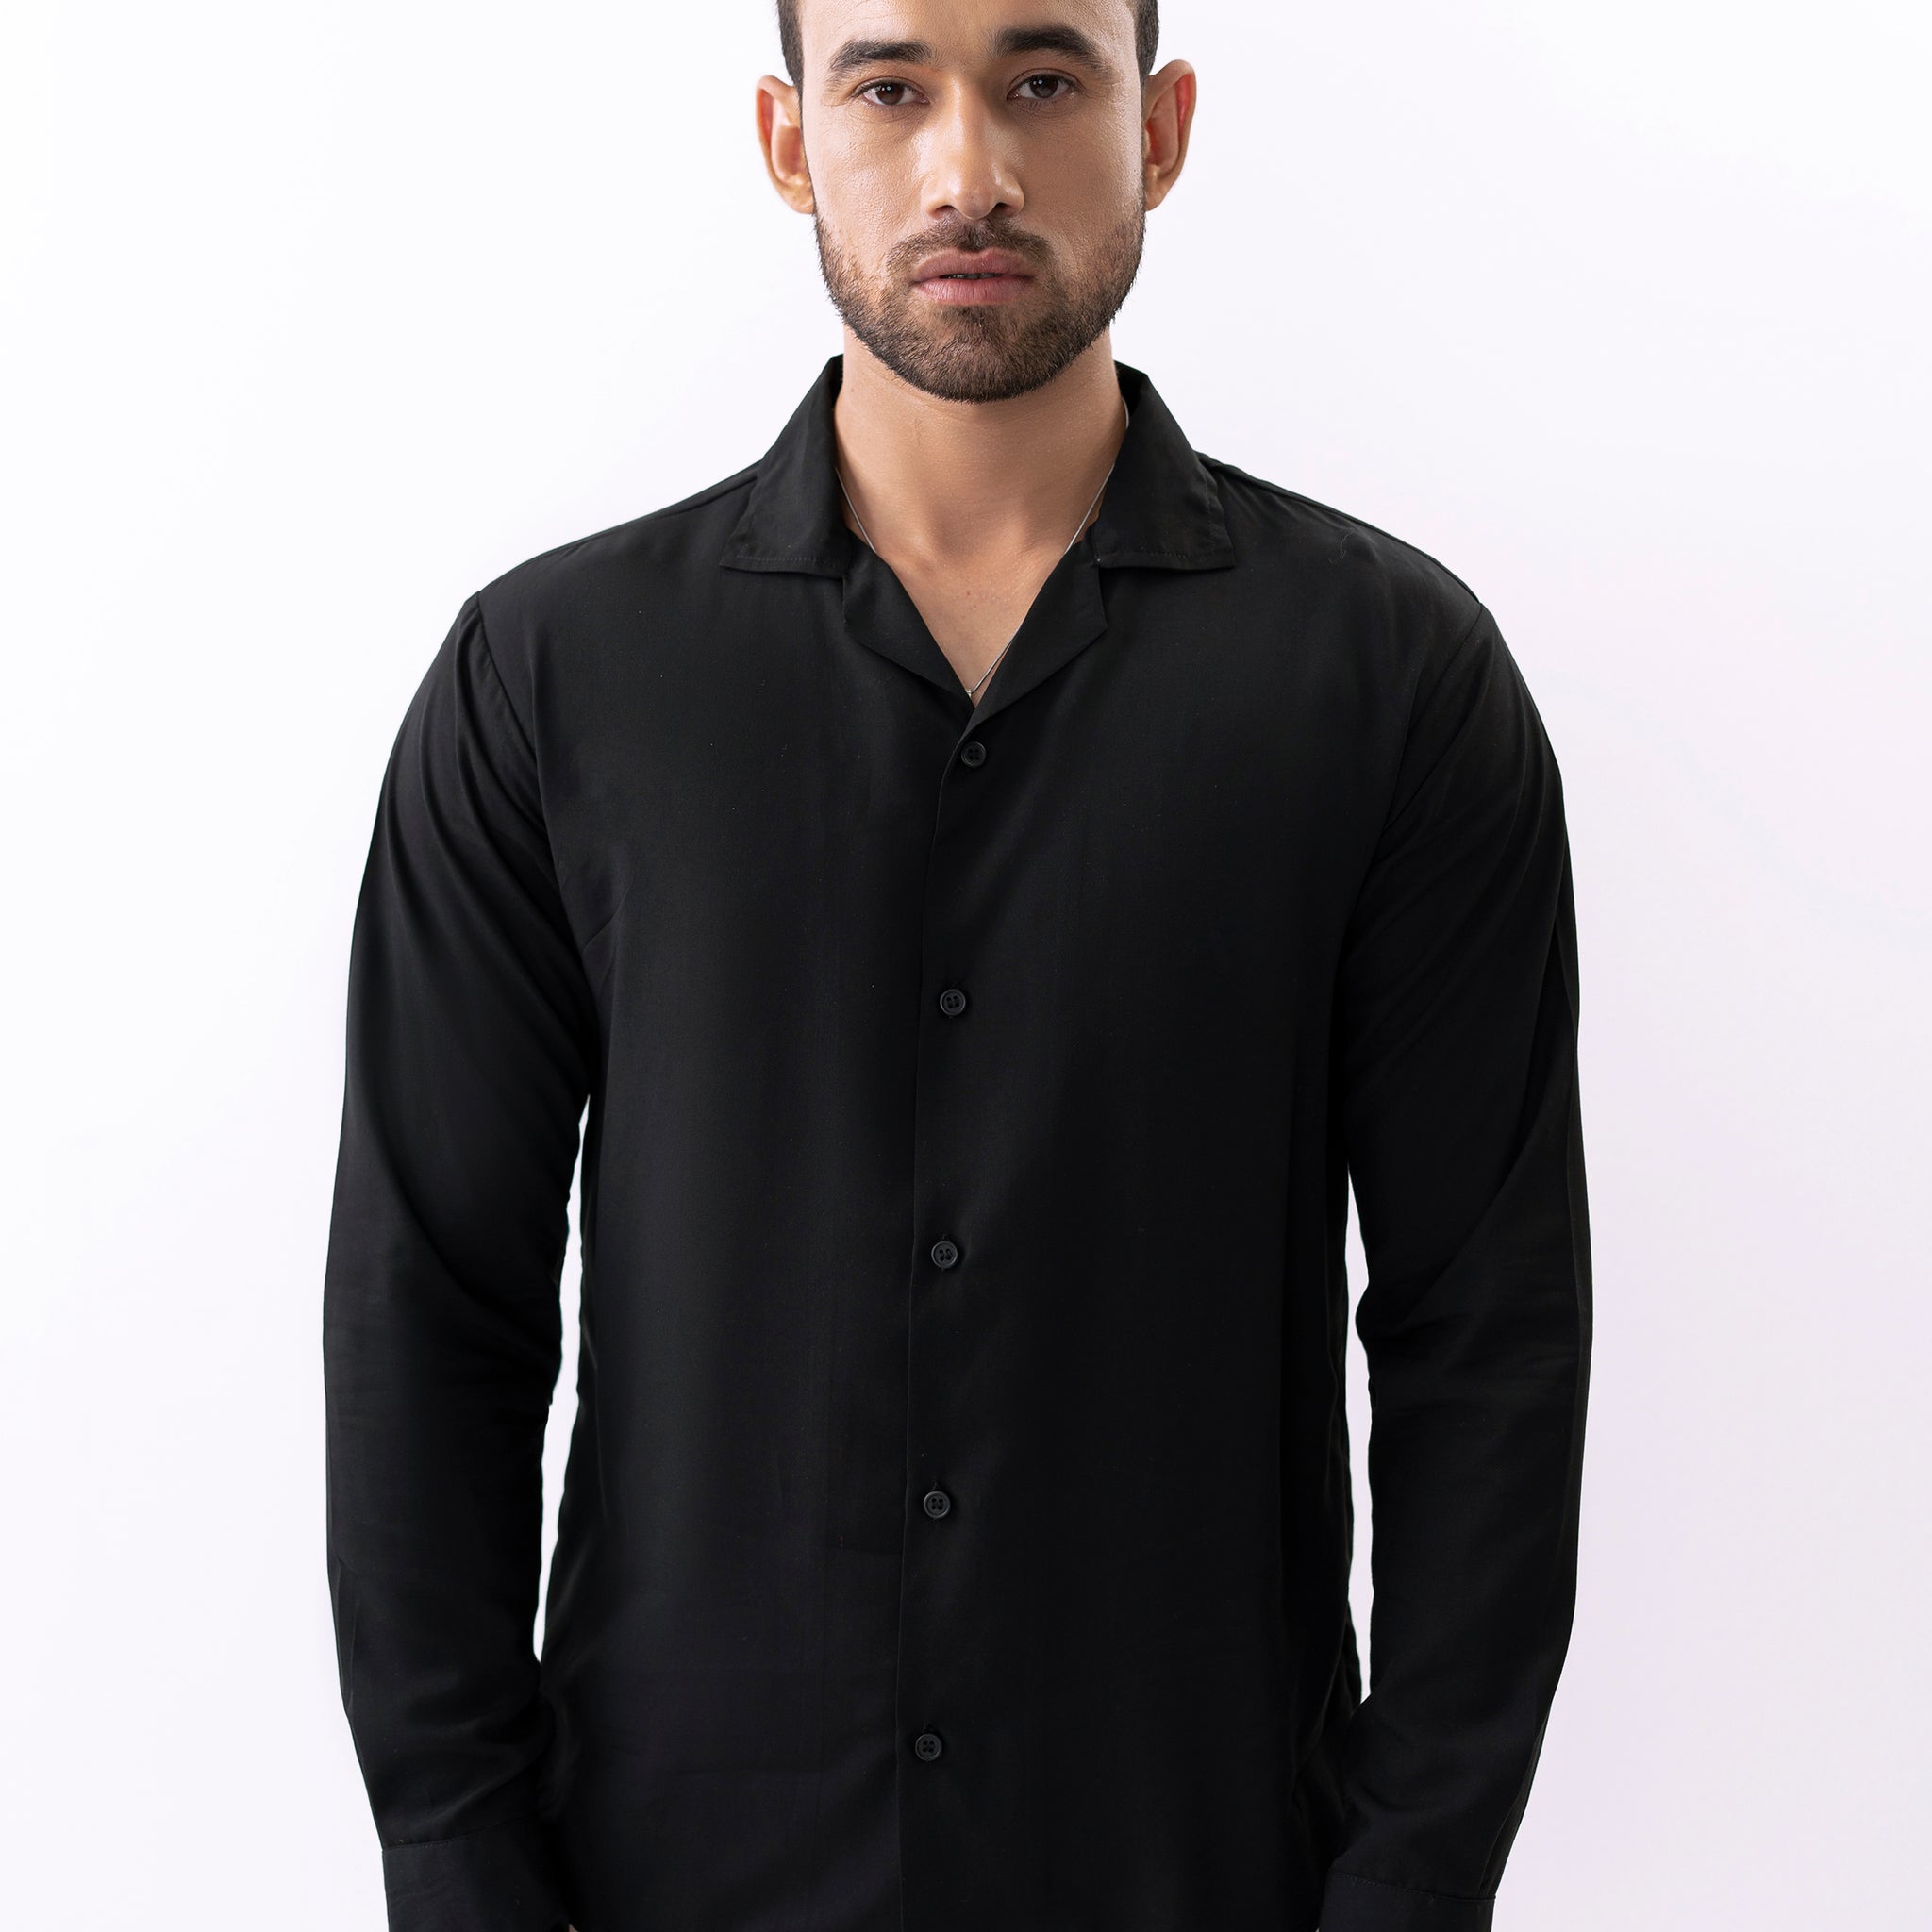 Basic Black Shirt - Full sleeves